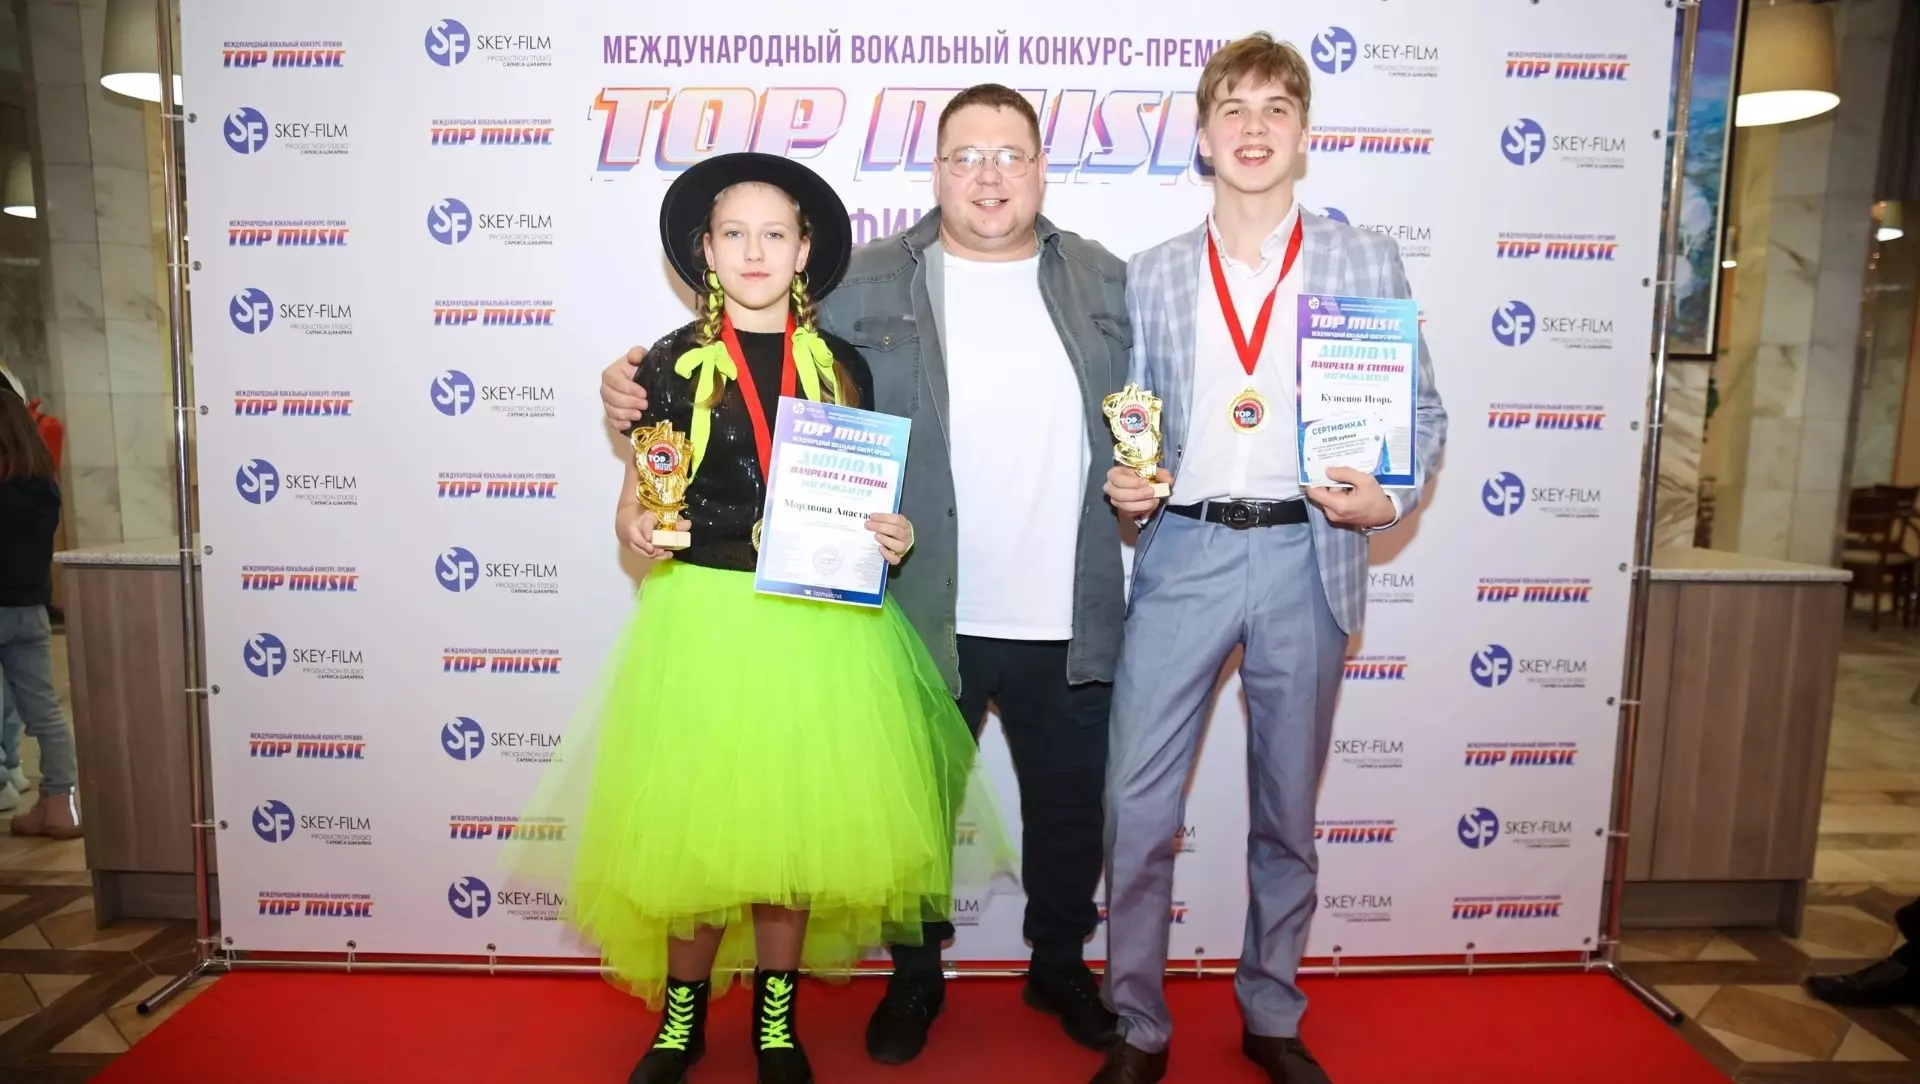 Юные вокалисты из Нижнего Тагила привезли дипломы лауреатов конкурса Top Music